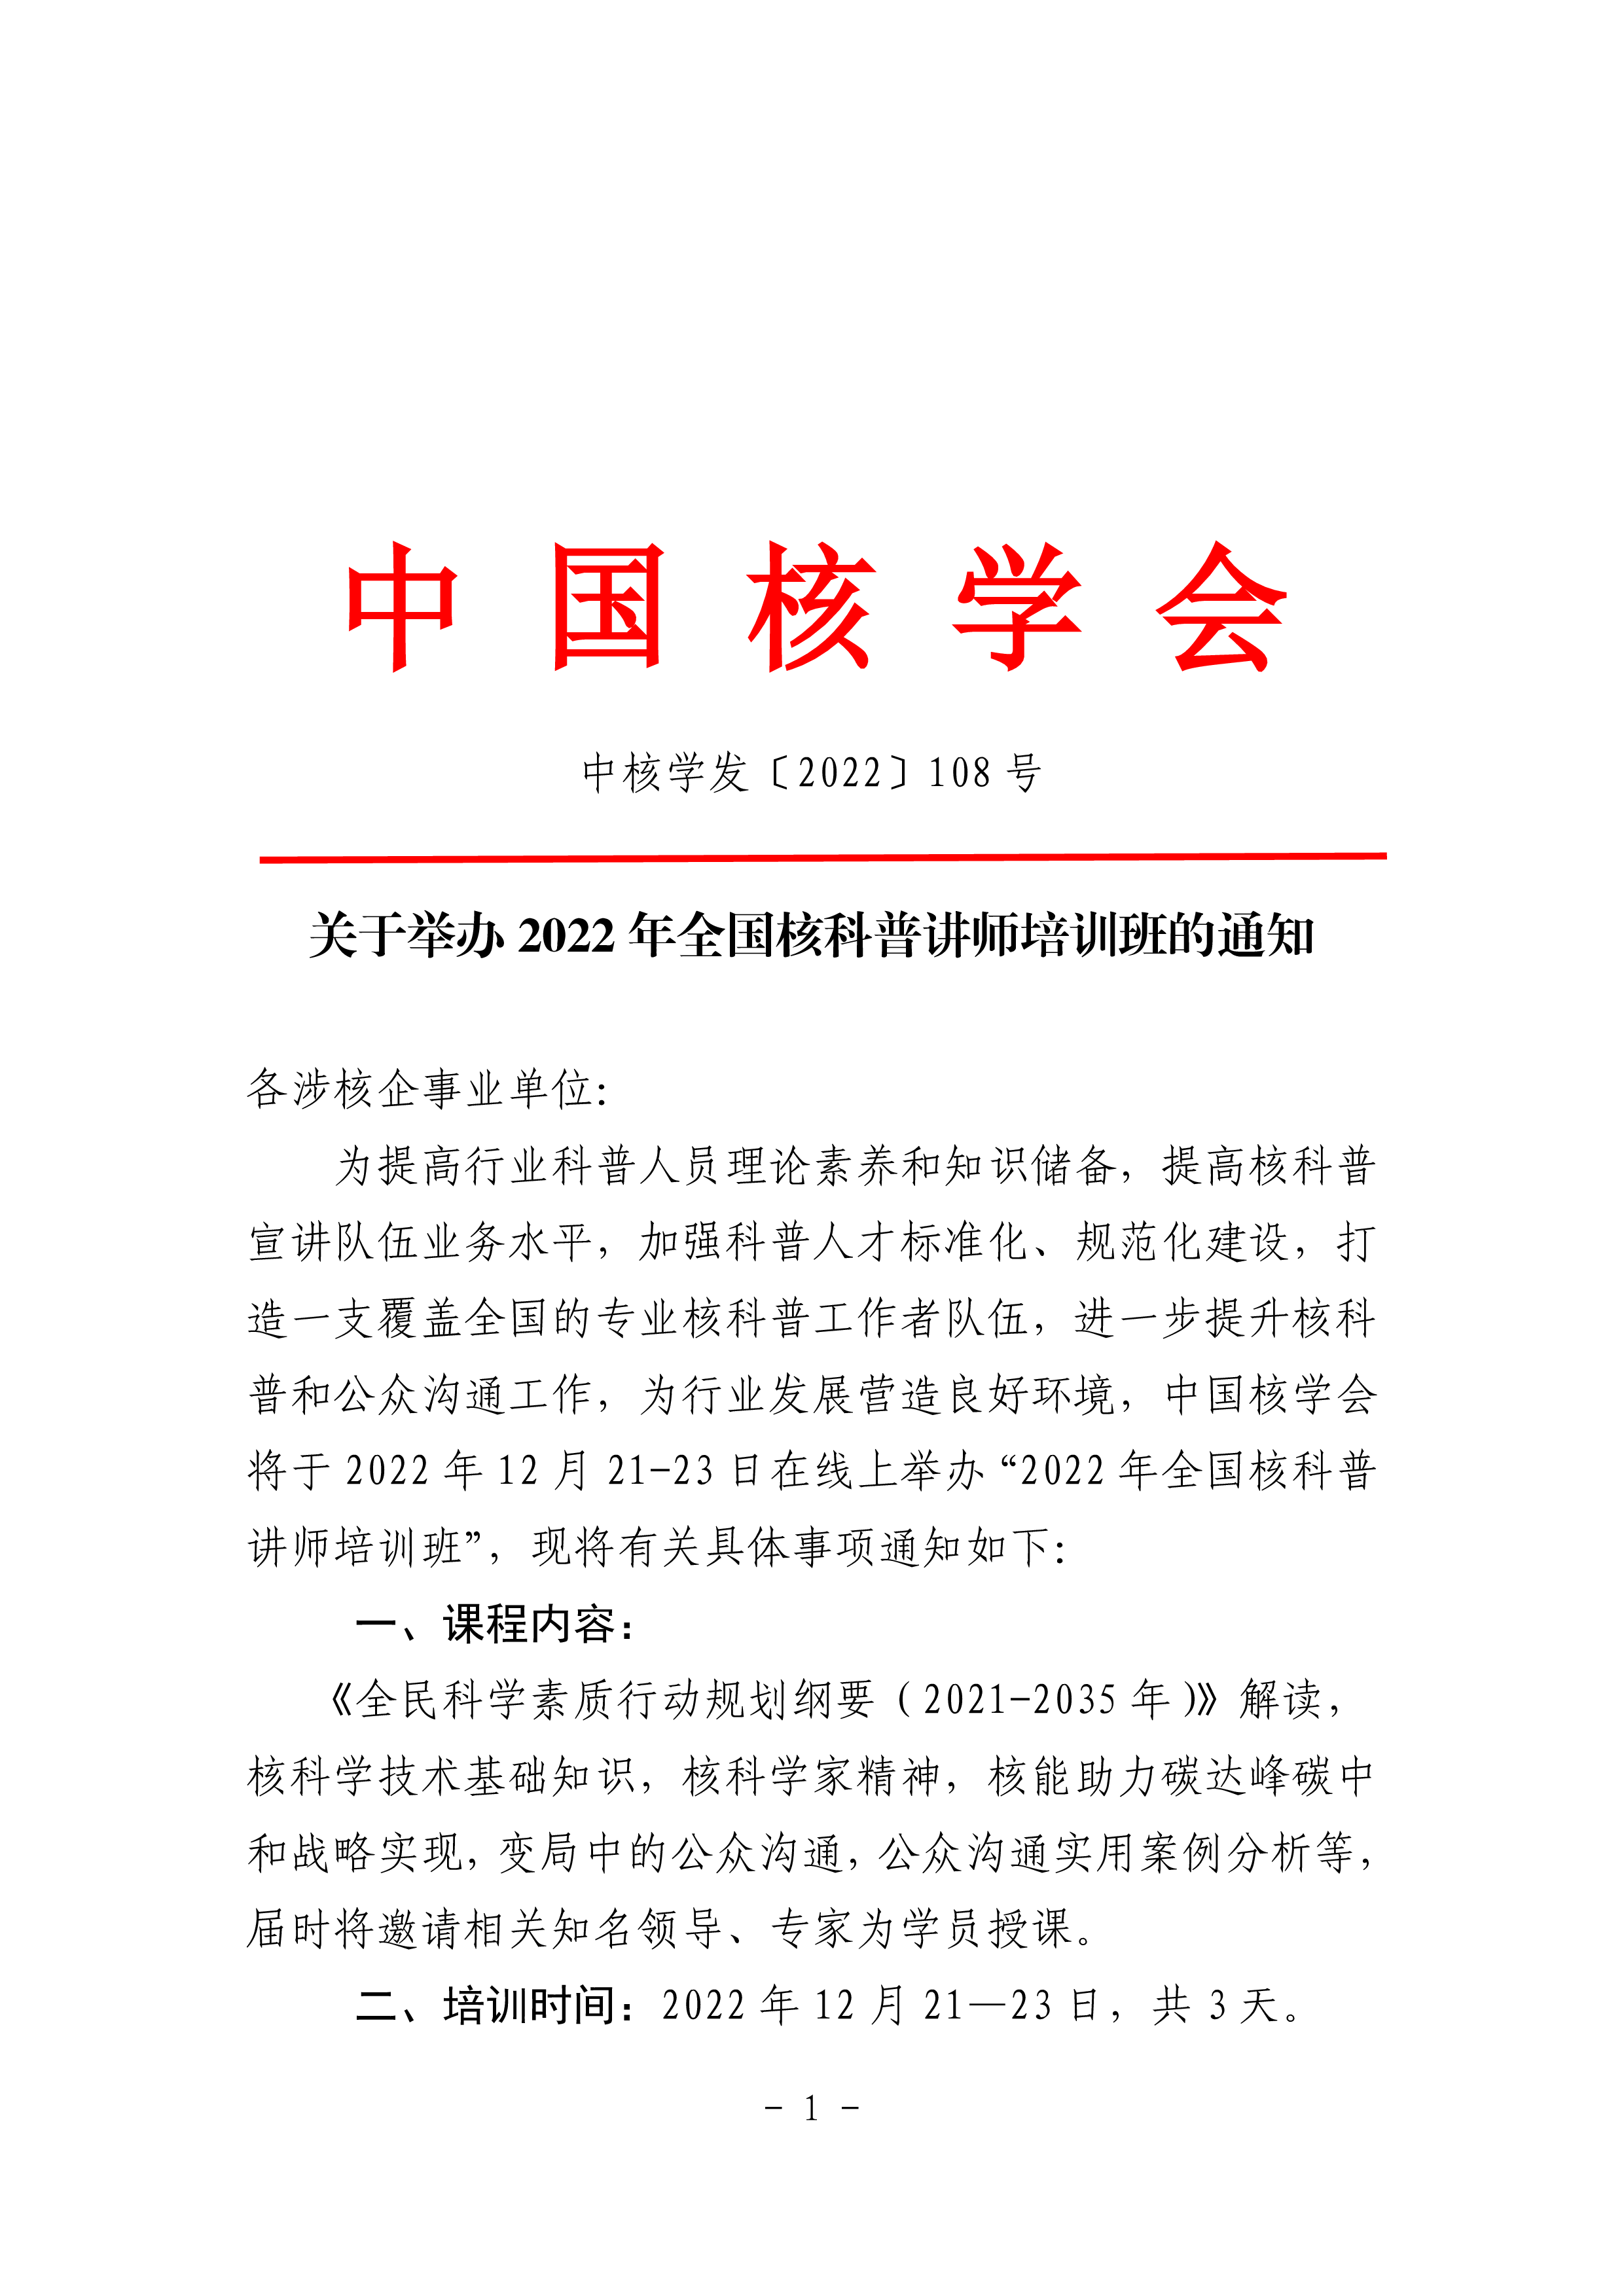 12.9关于举办2022年全国核科普讲师培训班的通知-0.png